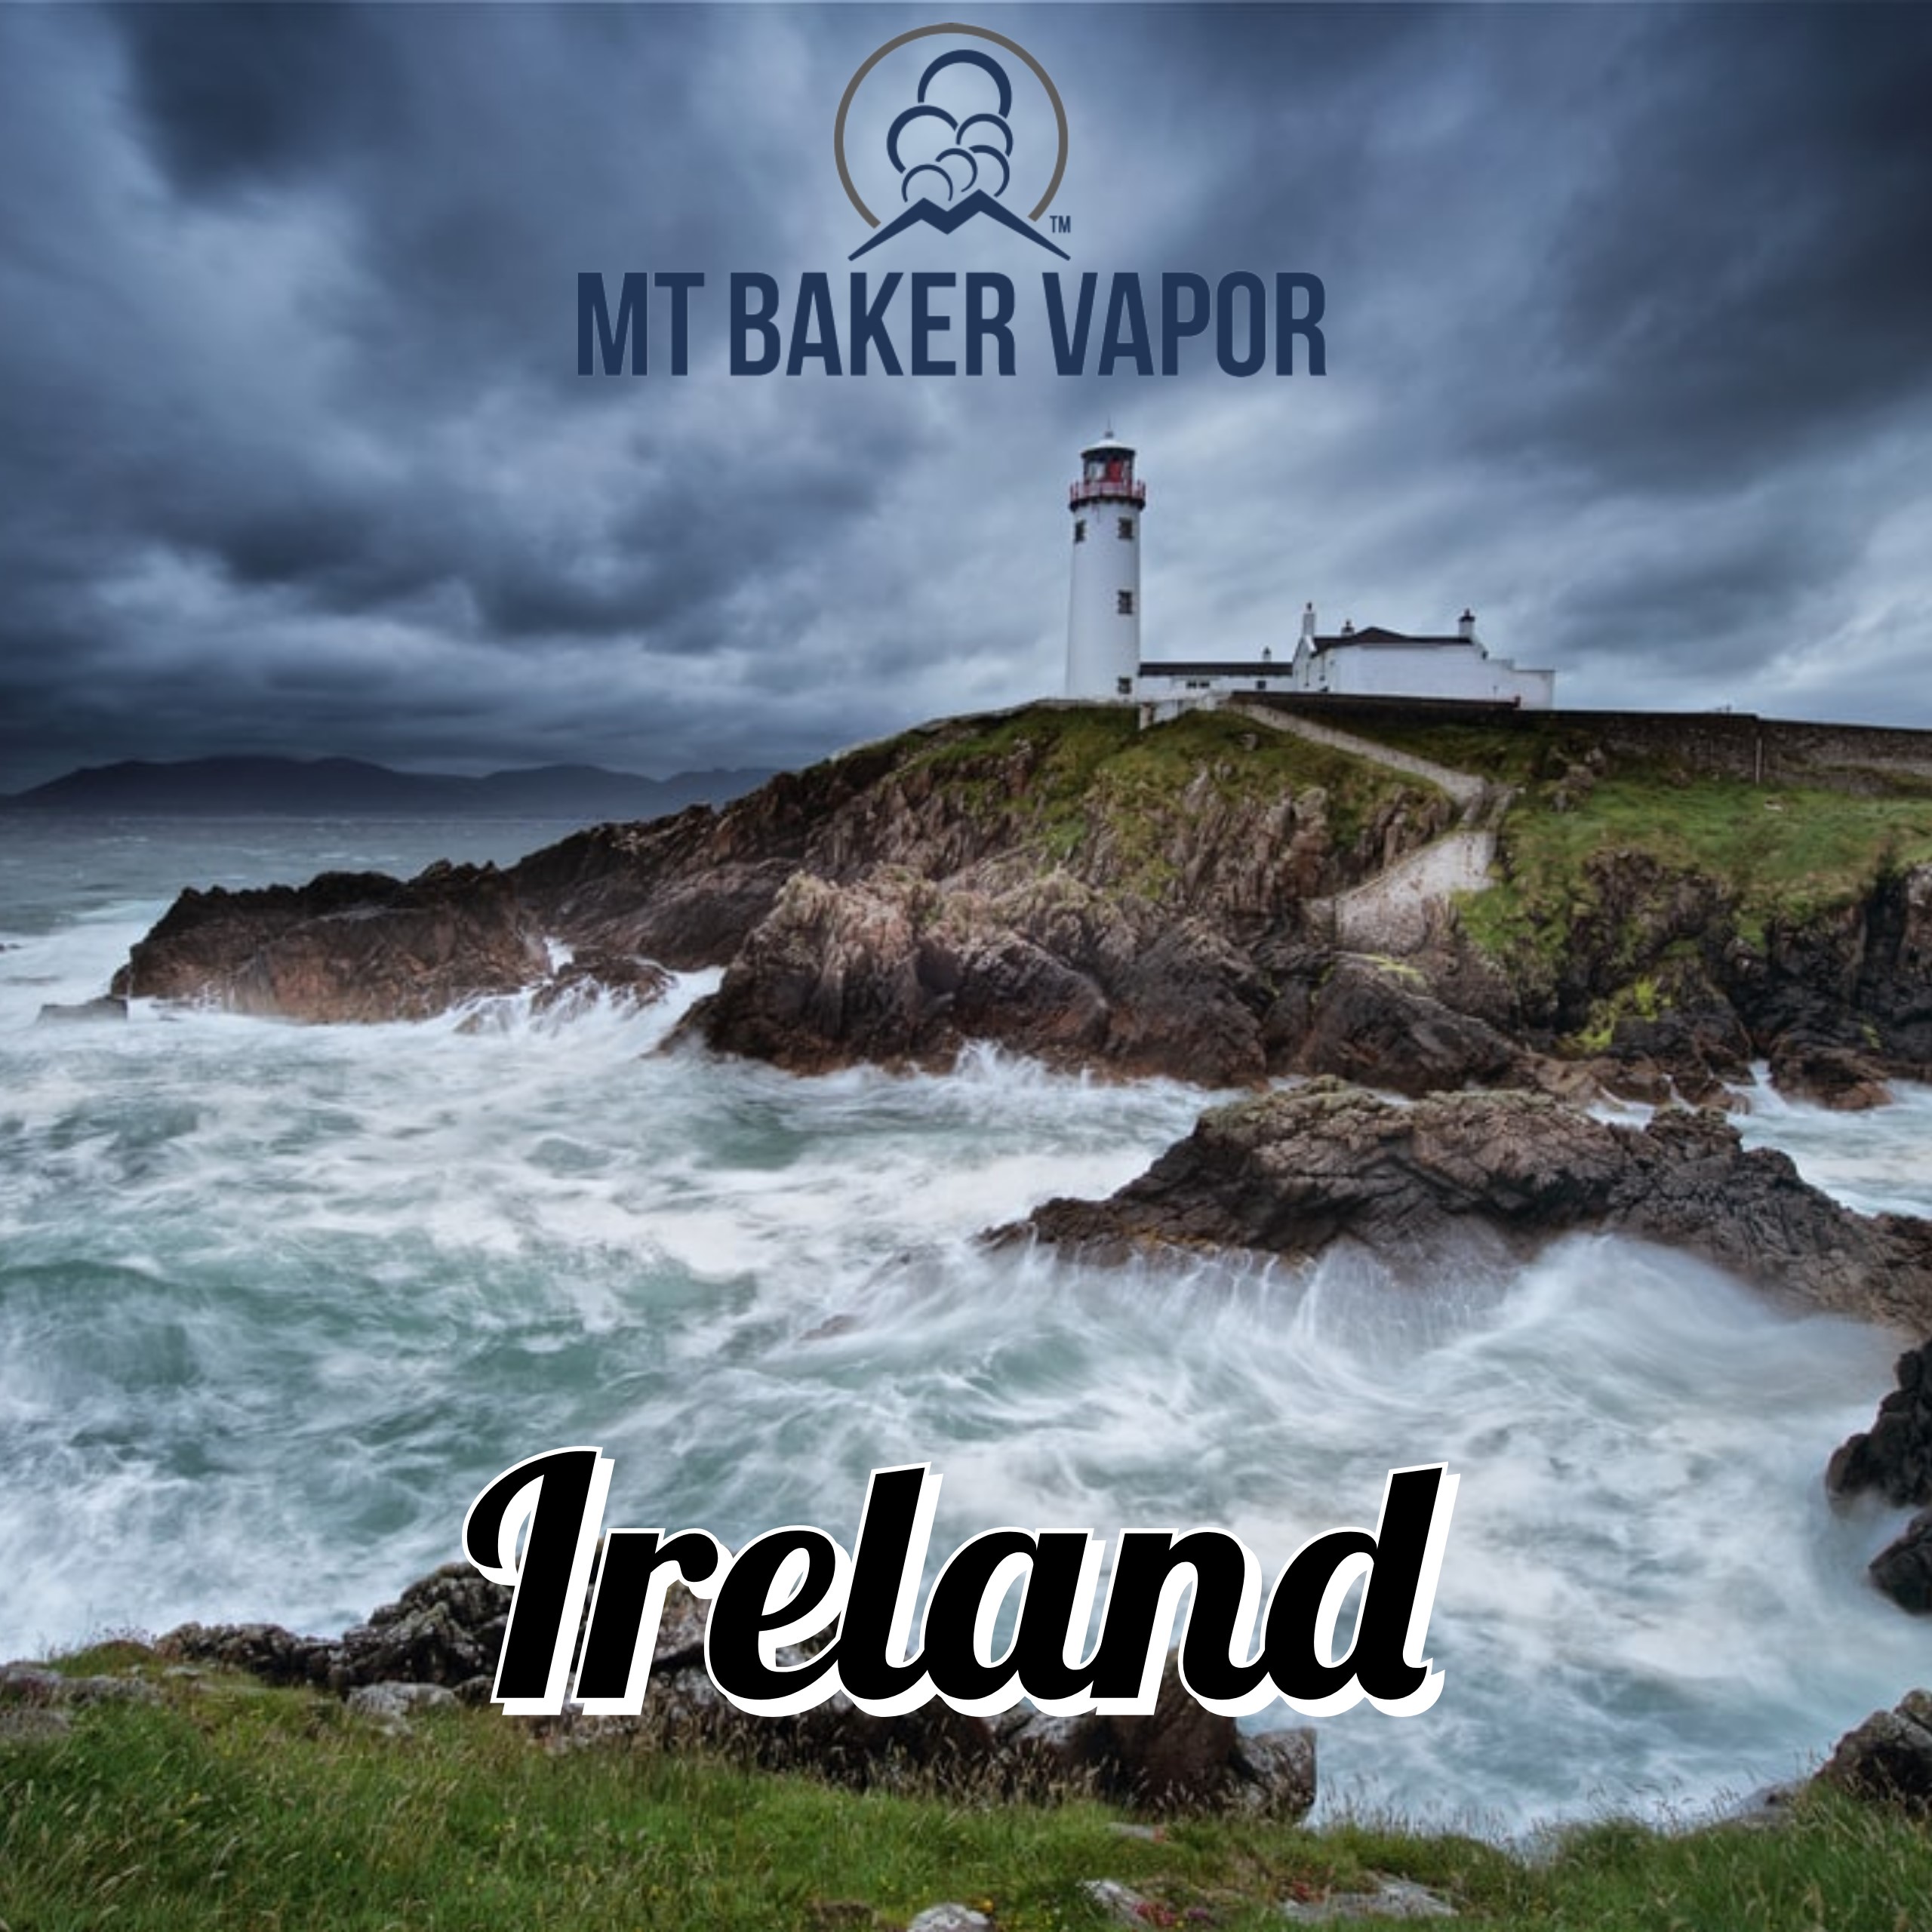 Mt Baker Vapor and Ireland